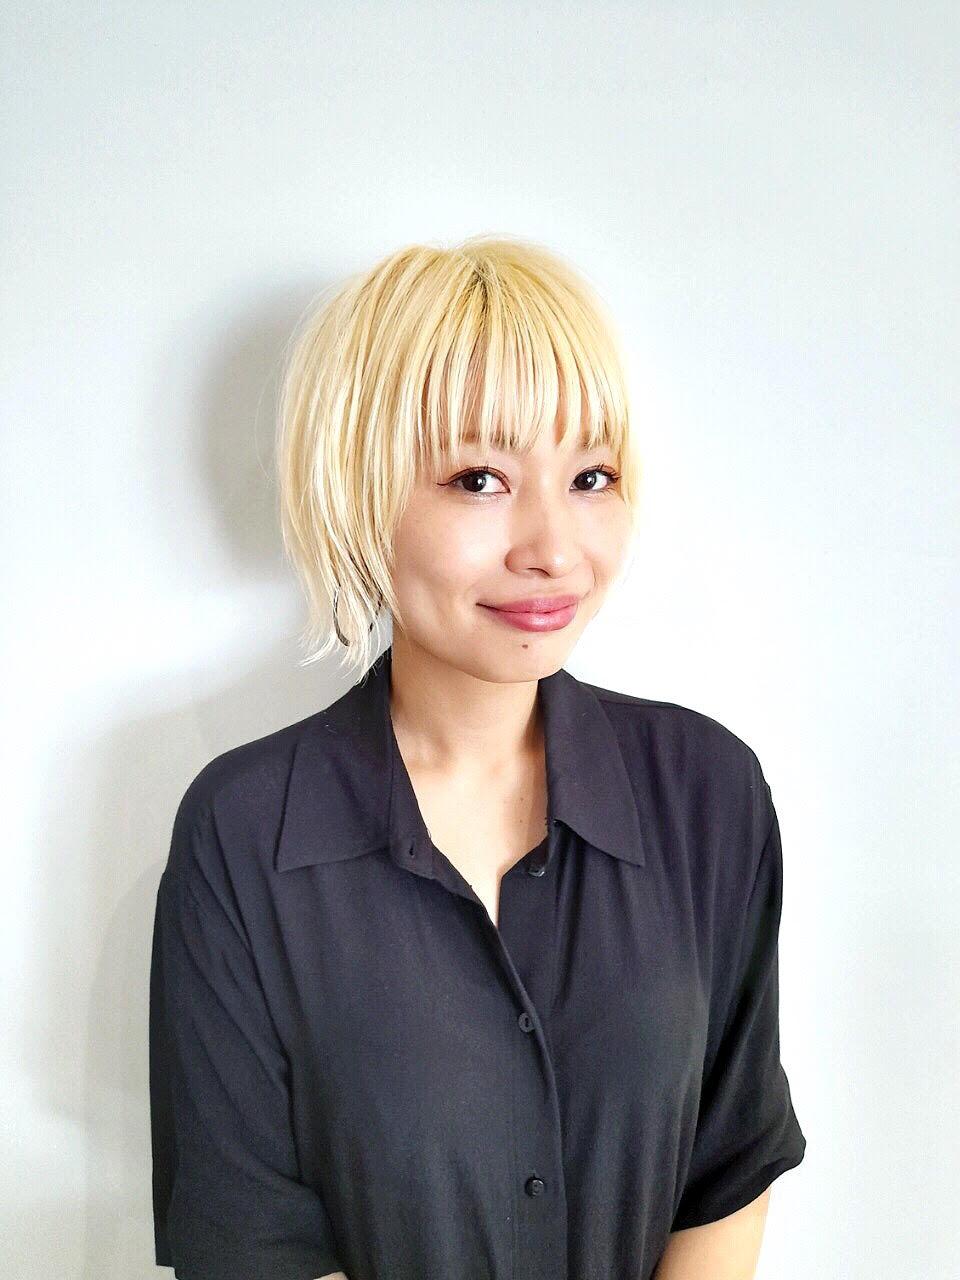 stylist　YUKINO 美容師歴１５年 得意なスタイル / ショートカット　マニッシュ　ボーイズライク 得意な技術 / 遊び心のあるエレガントな大人カラーリング 趣味 / お肌の管理　有酸素運動